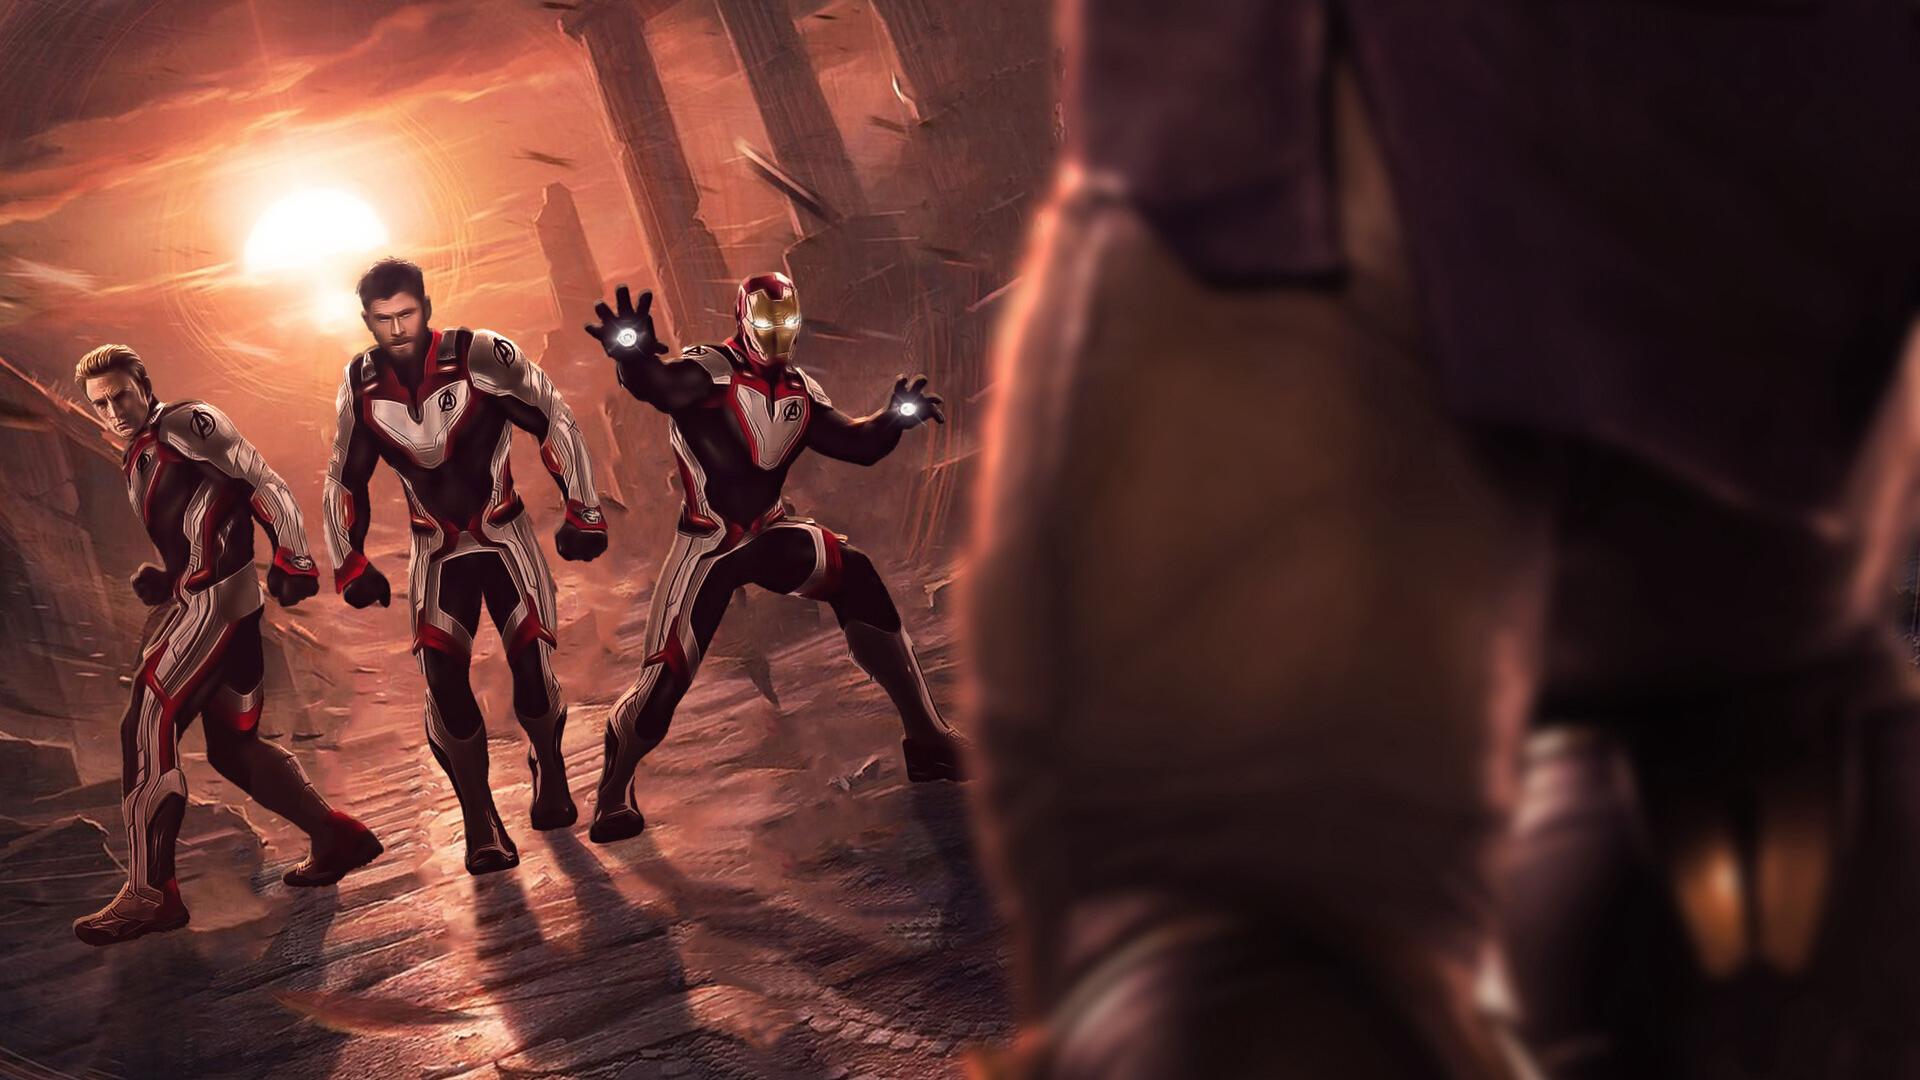 Thor Captain America Iron Man In Quantum Realm Suit Avengers Endgame